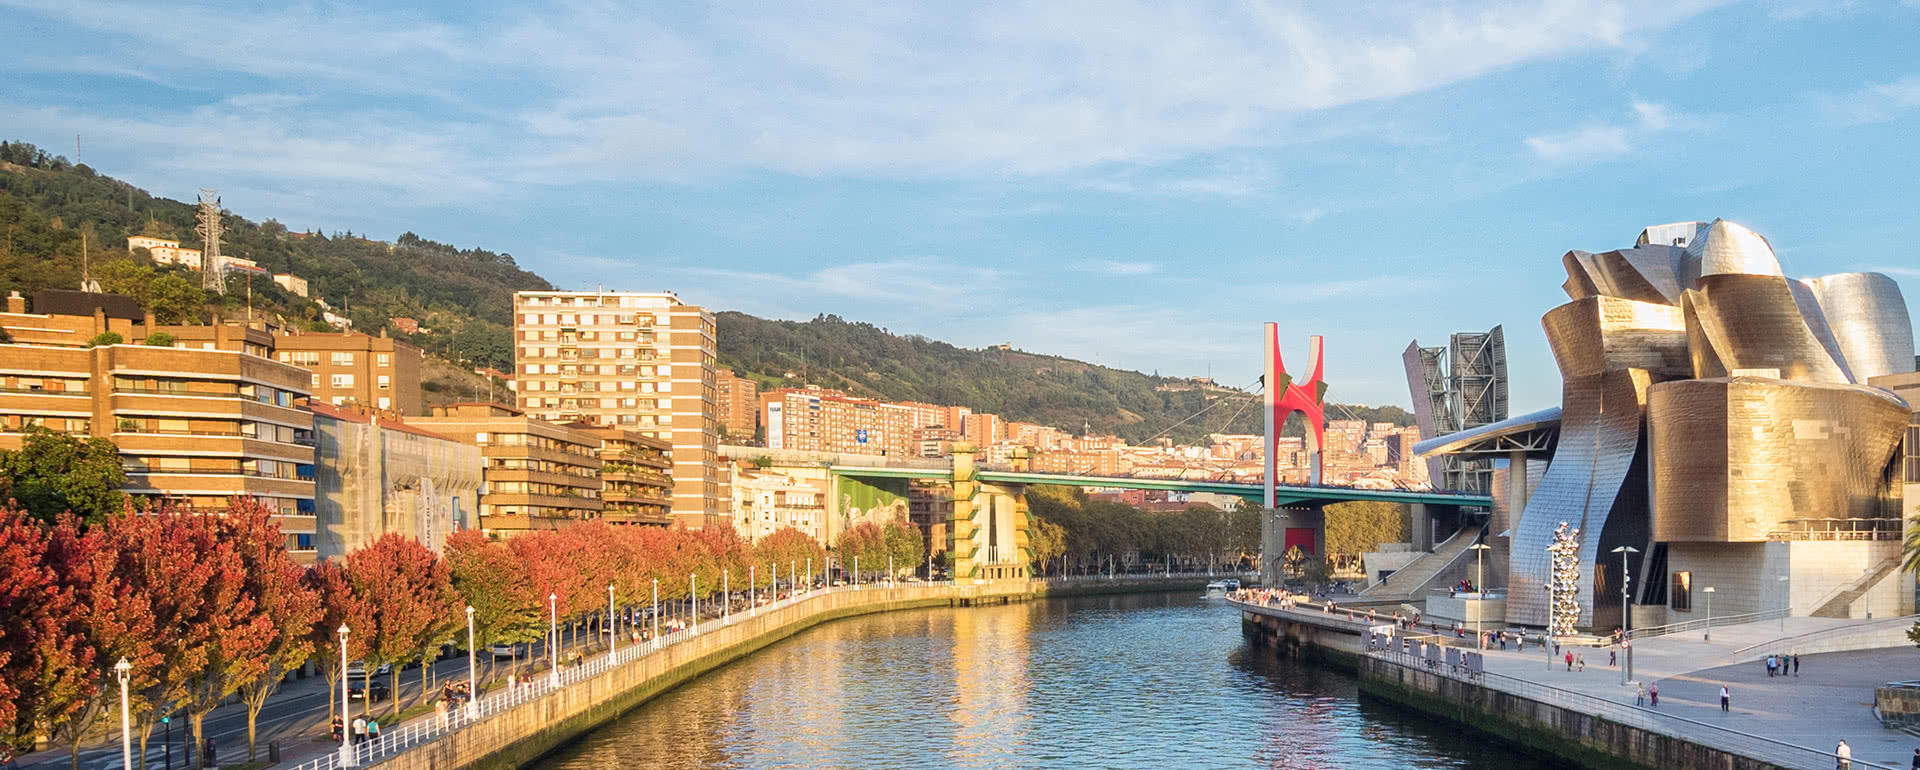 Coverbild von Bilbao